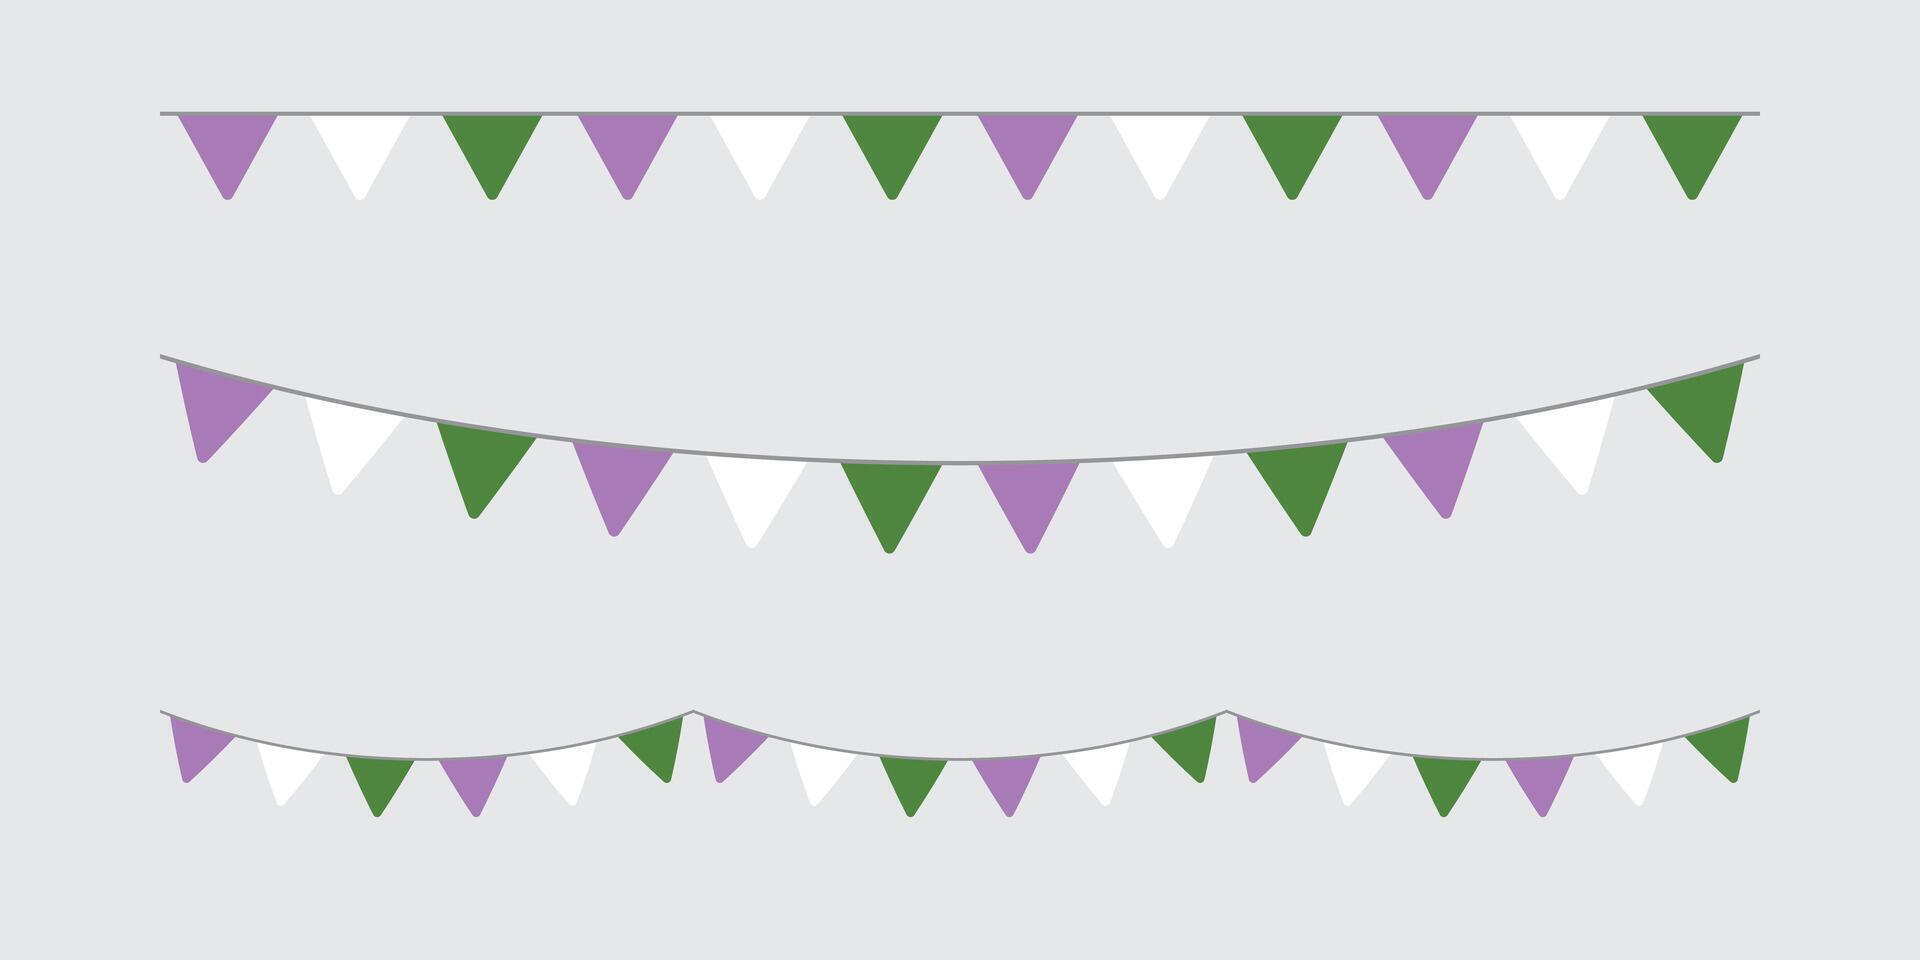 púrpura, blanco, y verde de colores fiesta verderón, como el colores de el género queer bandera. lgbtqi concepto. plano diseño ilustración. vector